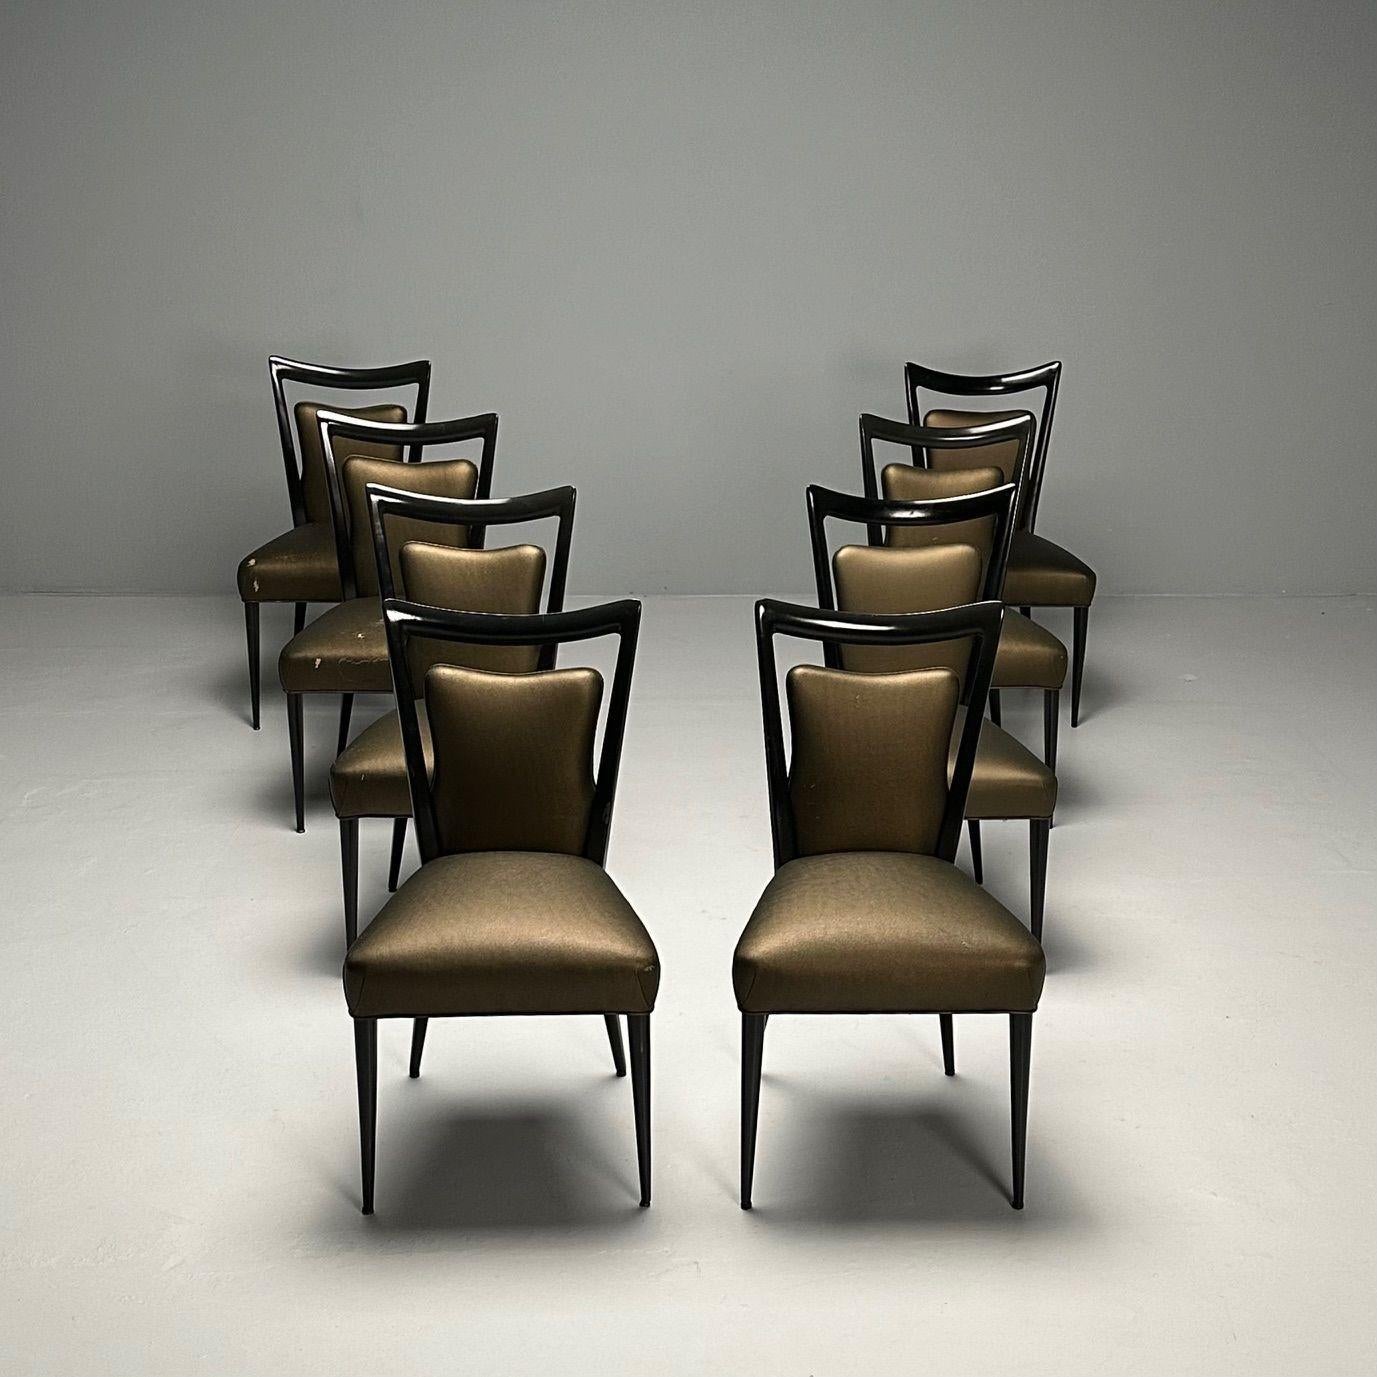 Melchiorre Bega, Italienische Mid-Century Modern-Esszimmerstühle, acht Esszimmerstühle, schwarzer Lack

Satz von acht Esszimmerstühlen, entworfen von Melchiorre BEGA (1898-1976) für das Hotel Bristol in Meran, Italien, ca. 1950er Jahre. Ein